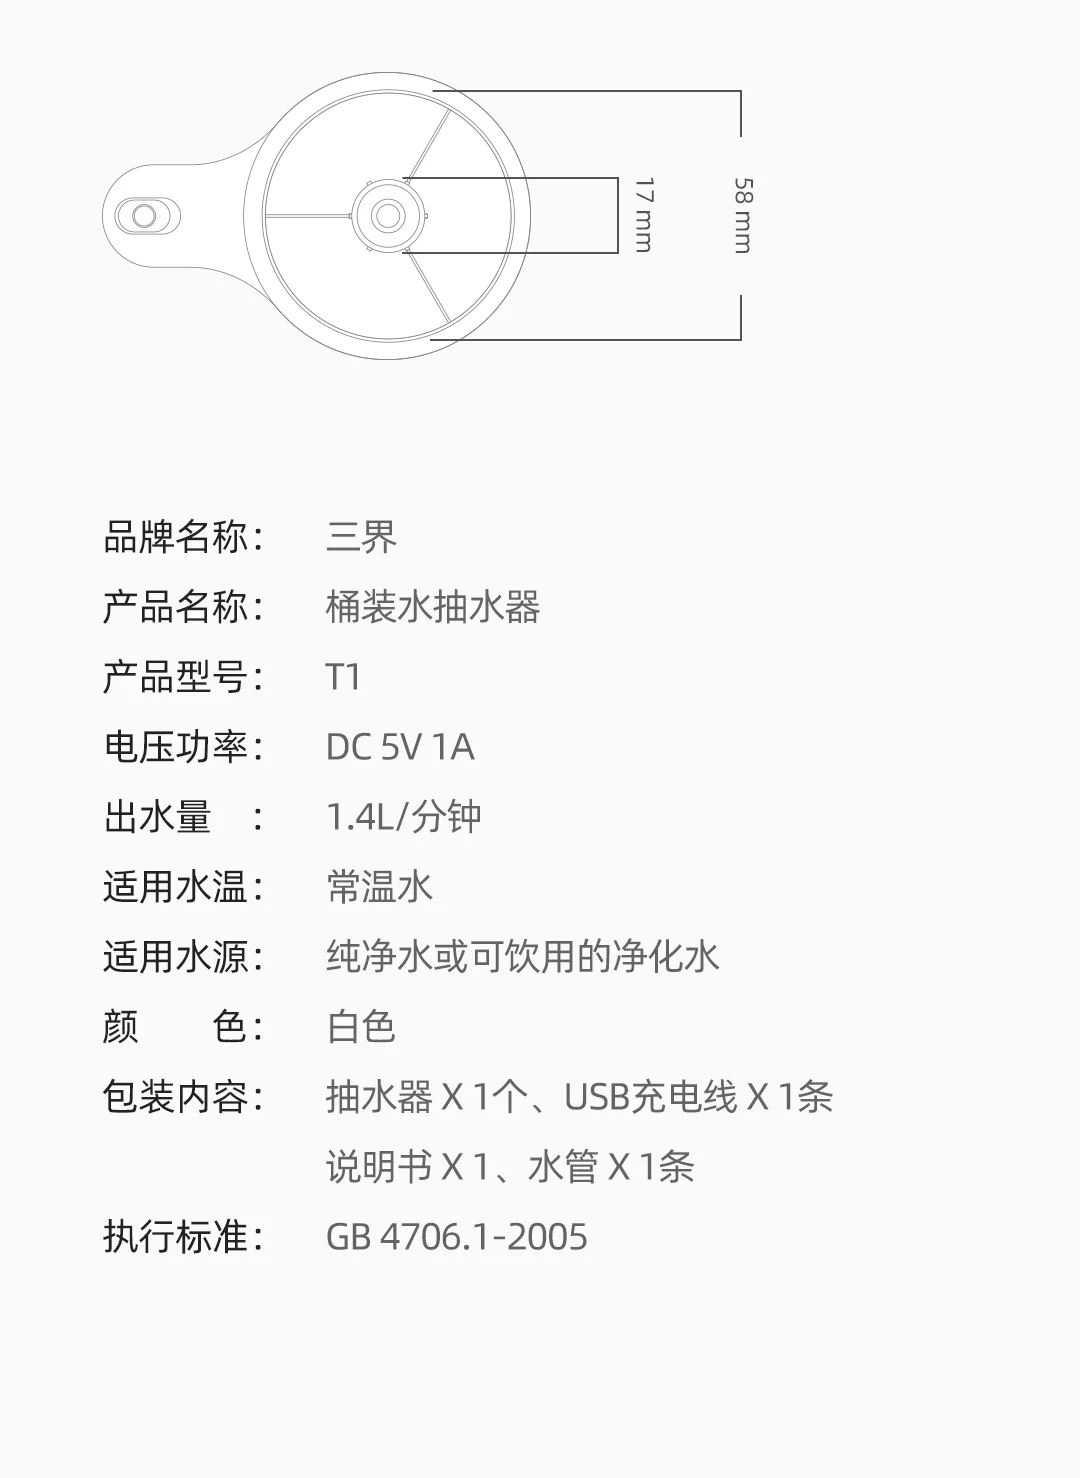 Новейший Xiaomi Mijia Youpin трехзонный Т1 бутилированный водяной насос цельная поилка для всех типов бутилированной воды белого цвета